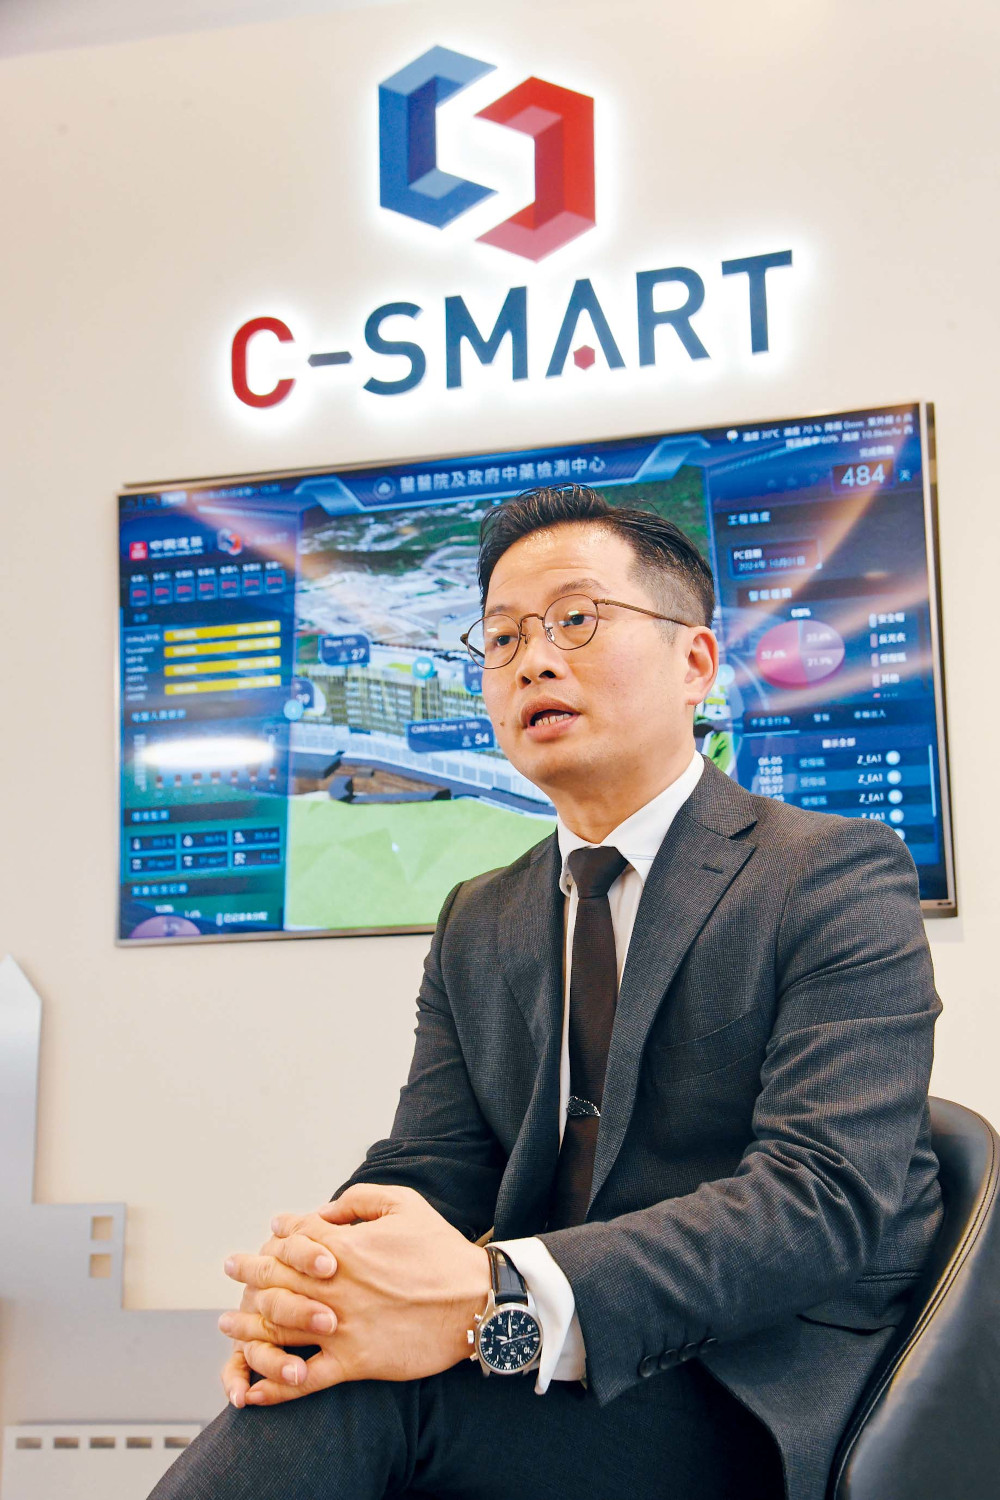 C-SMART智慧工地管理系統由中國建築工程（香港）有限公司開發，張先生說現時公司上下都為下一個階段C-SMART 4.0奮鬥，希望盡快推陳出新，繼續創新超越、領潮前行。